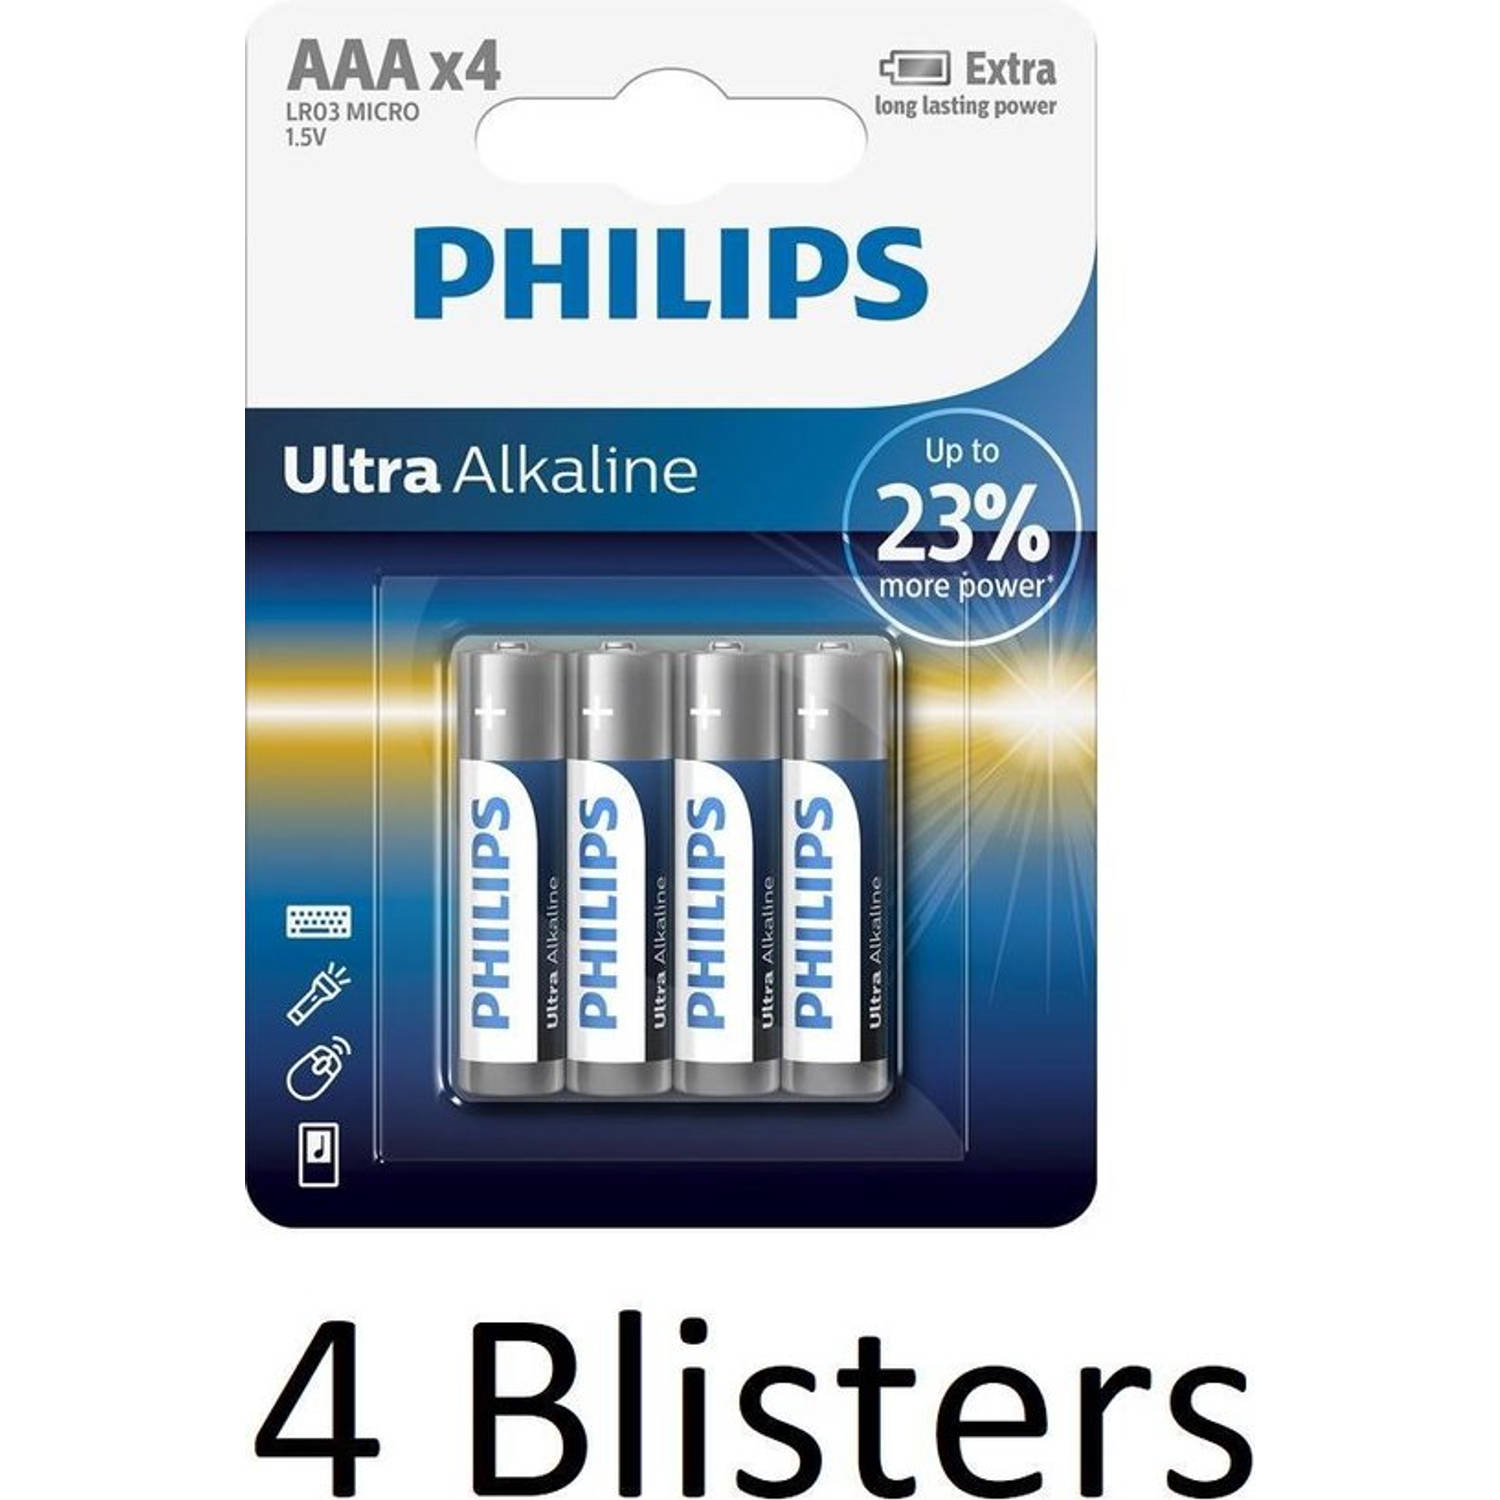 16 Stuks (4 Blisters a 4 st) Philips AAA Ultra Alkaline Batterijen